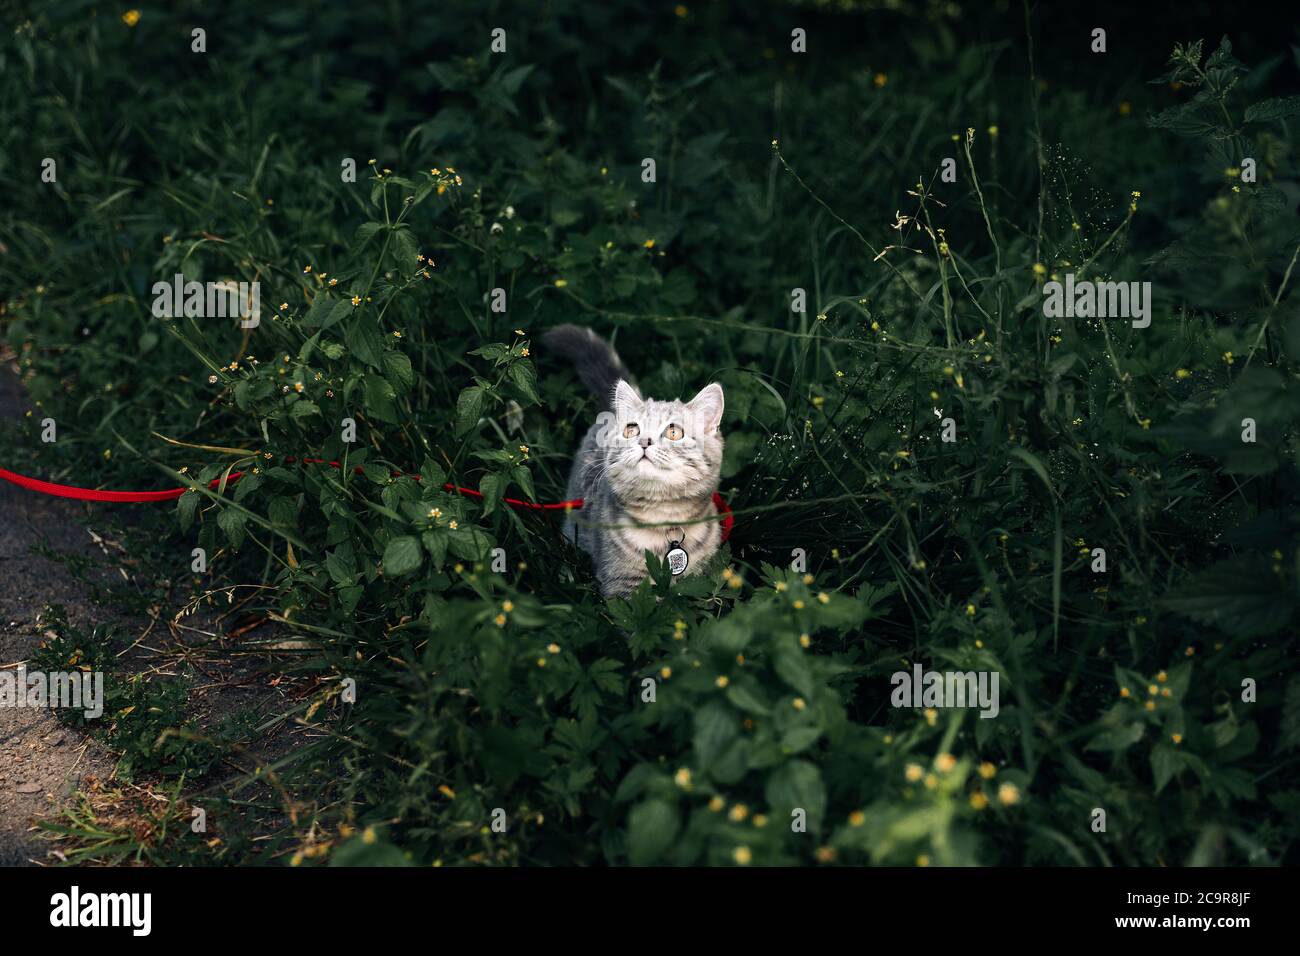 Gattino scozzese di quattro mesi fa cammina sull'erba in estate al guinzaglio con un passaporto qr ID. Foto di alta qualità Foto Stock